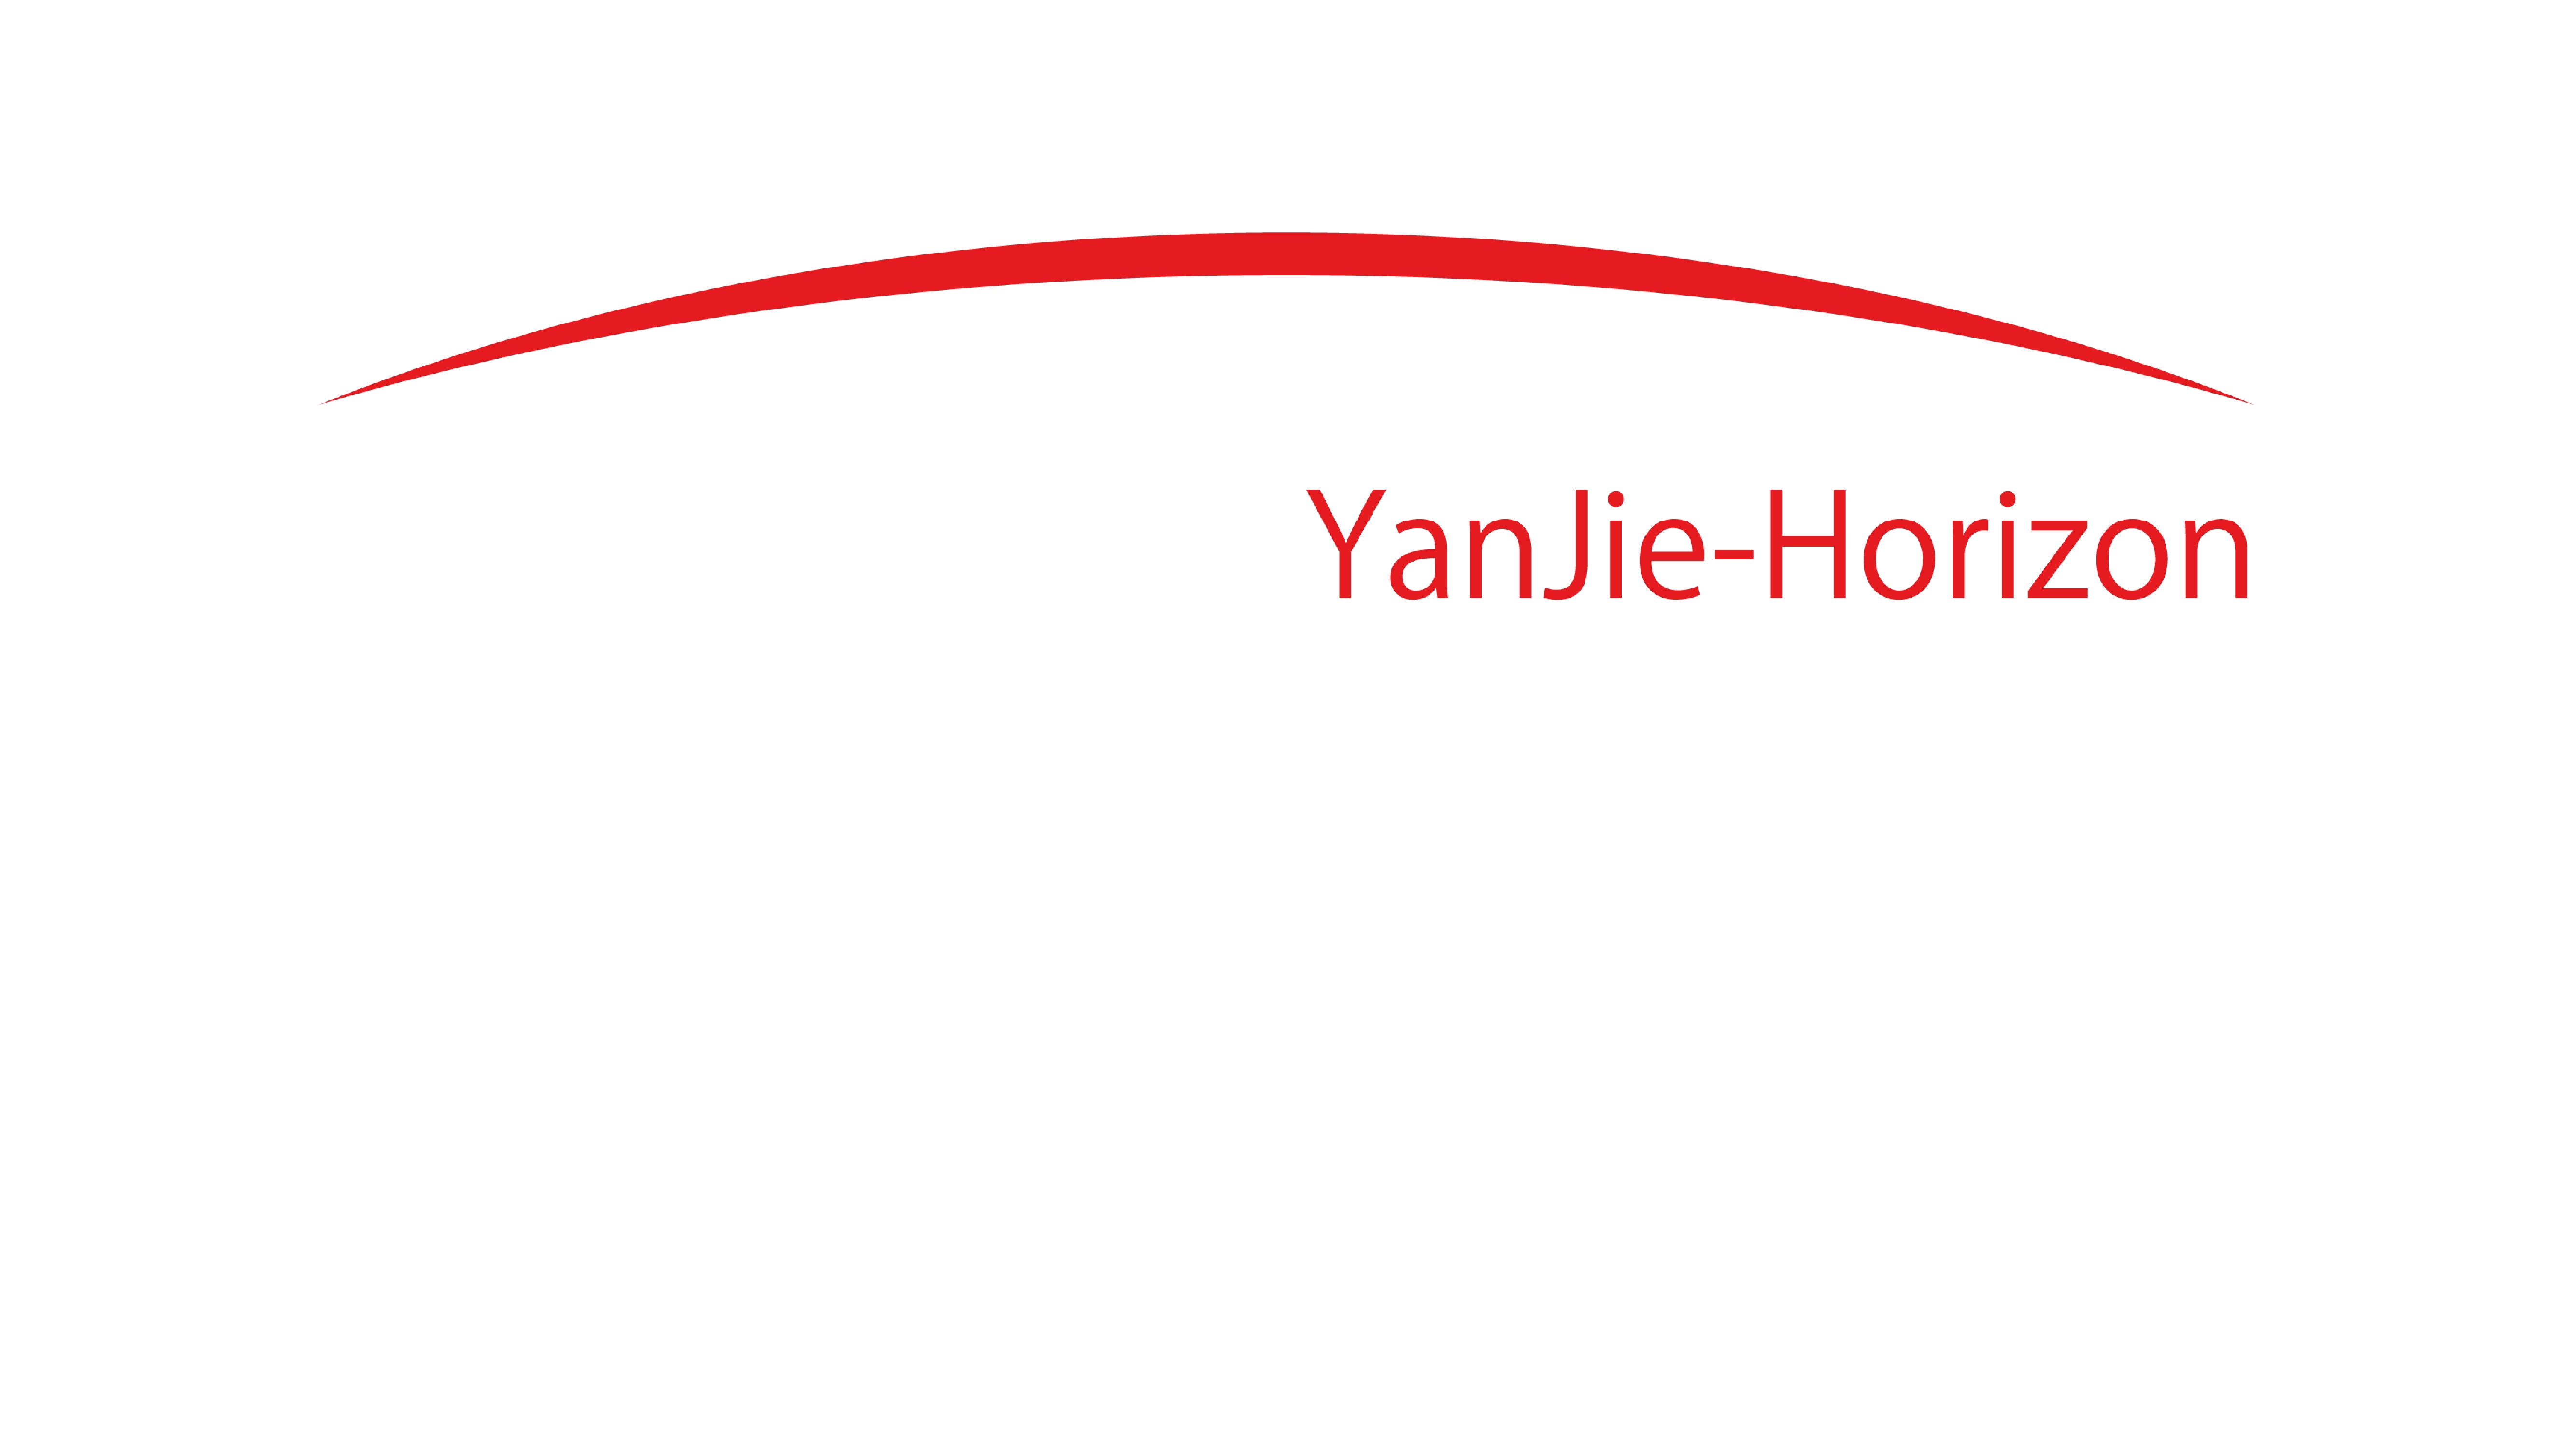 YanJie-Horizon